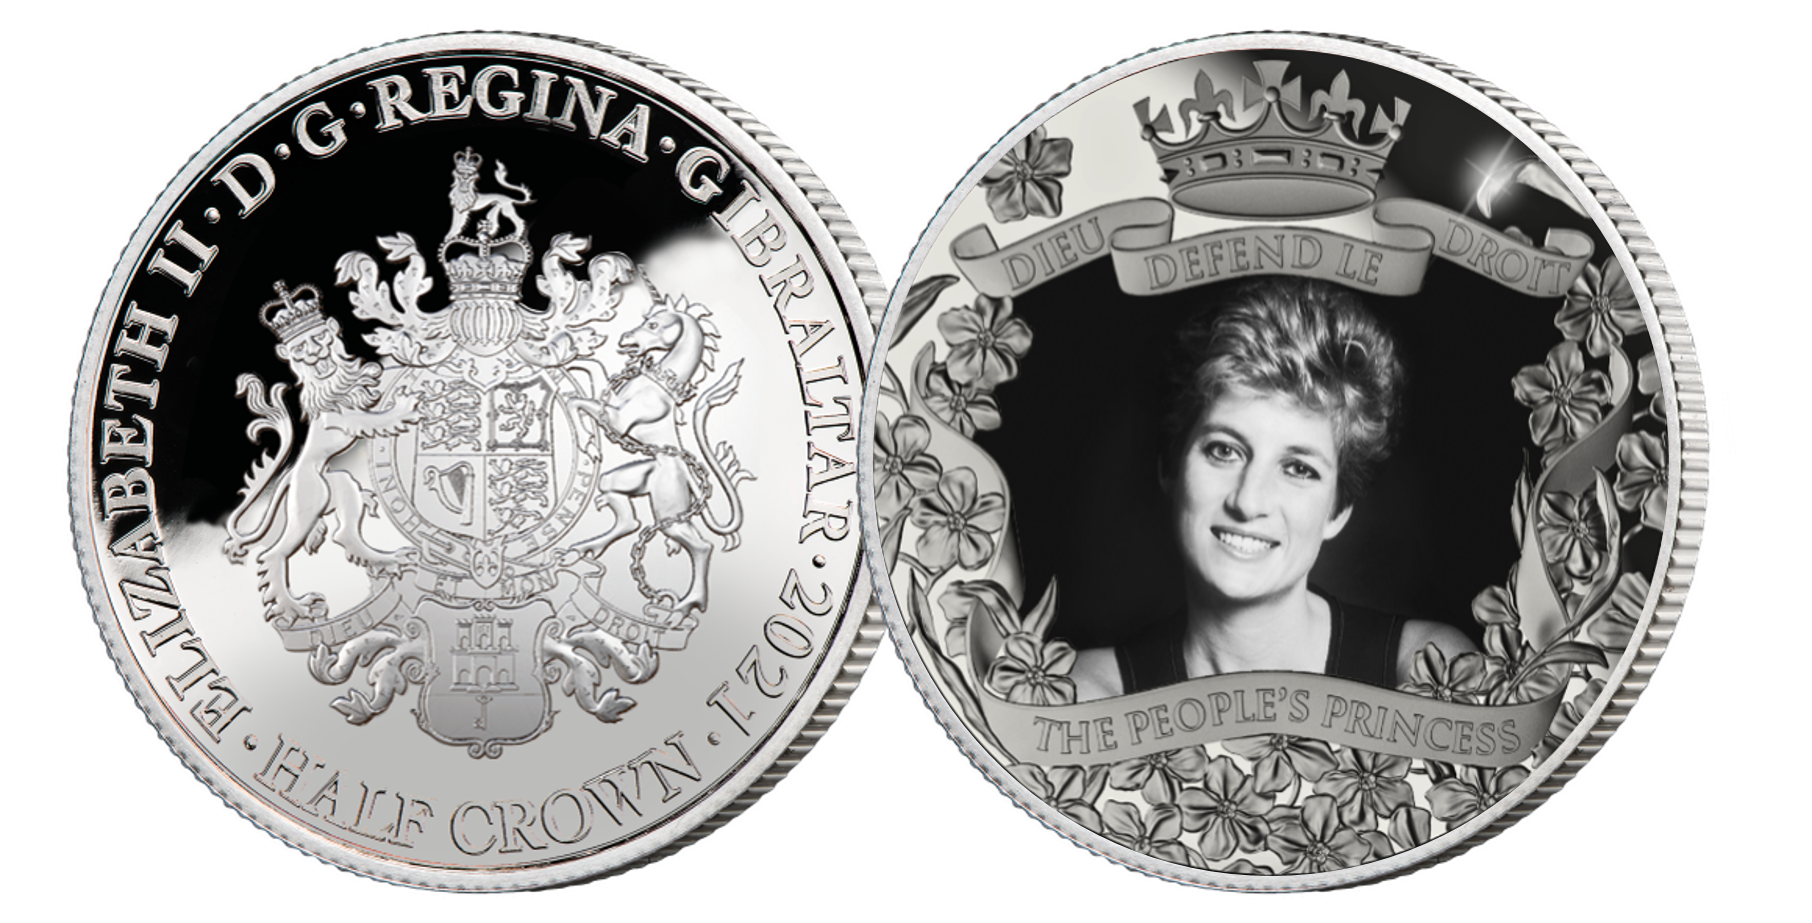   Diana 50th Birthday NNA Coin